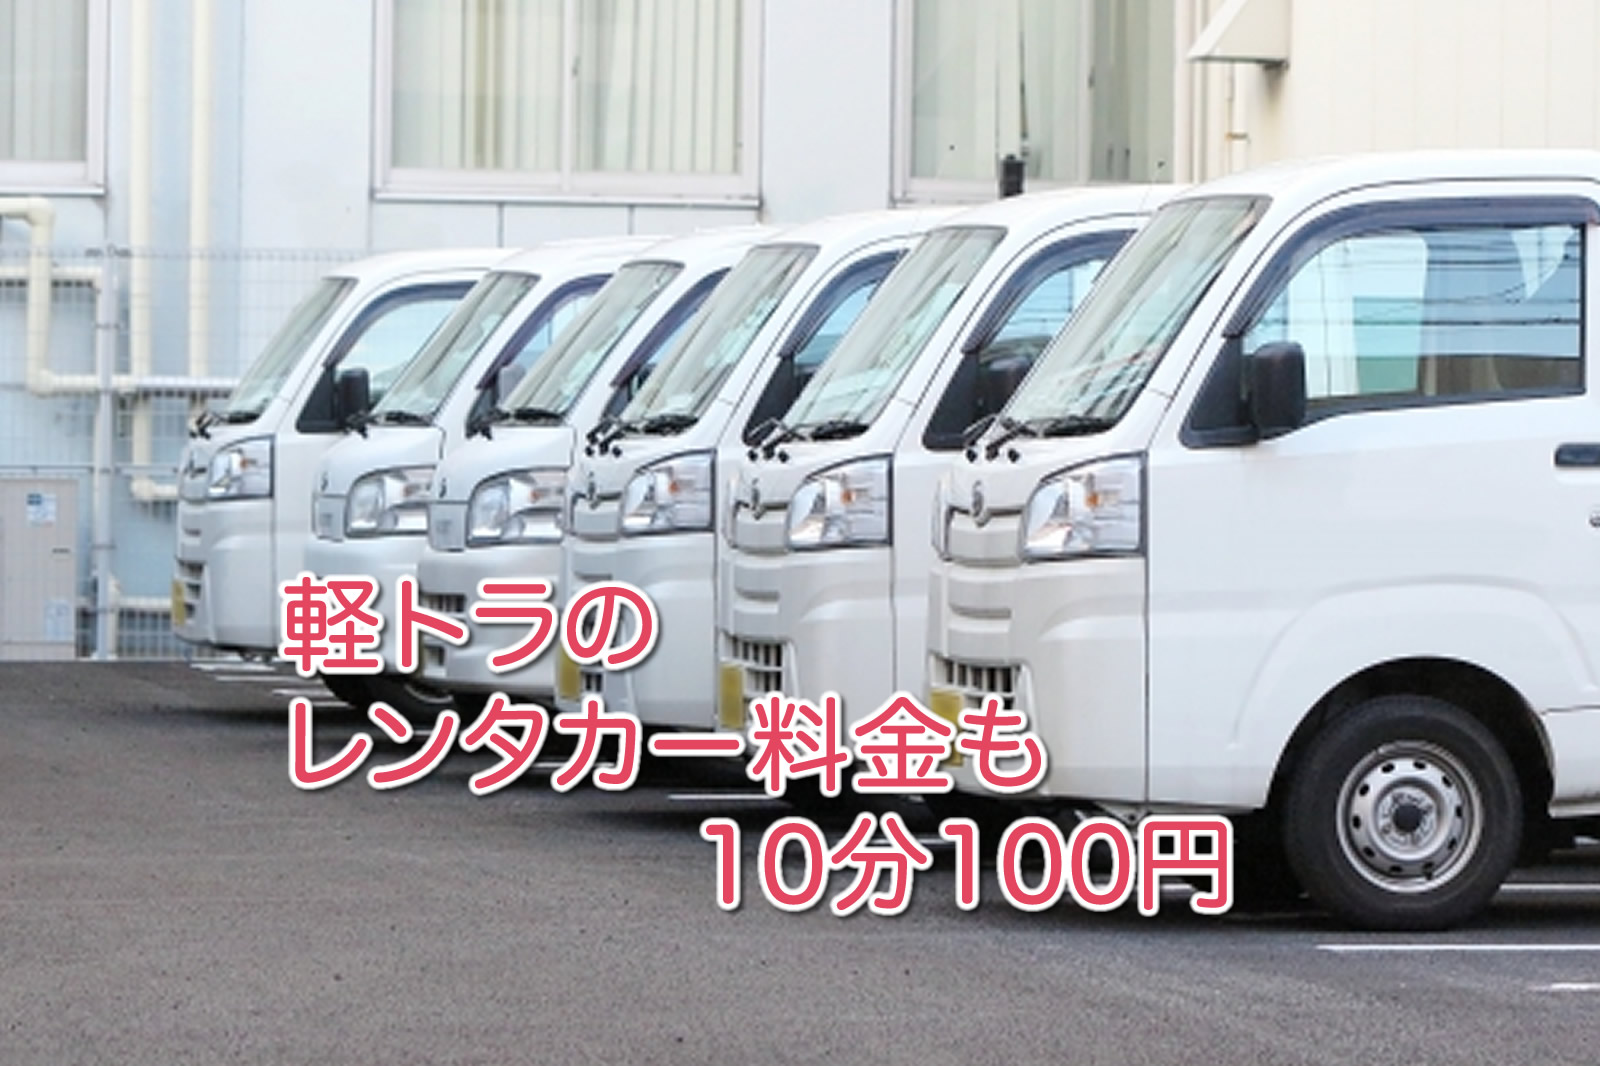 軽トラのレンタカー 料金も10分100円 100円レンタカーブログ